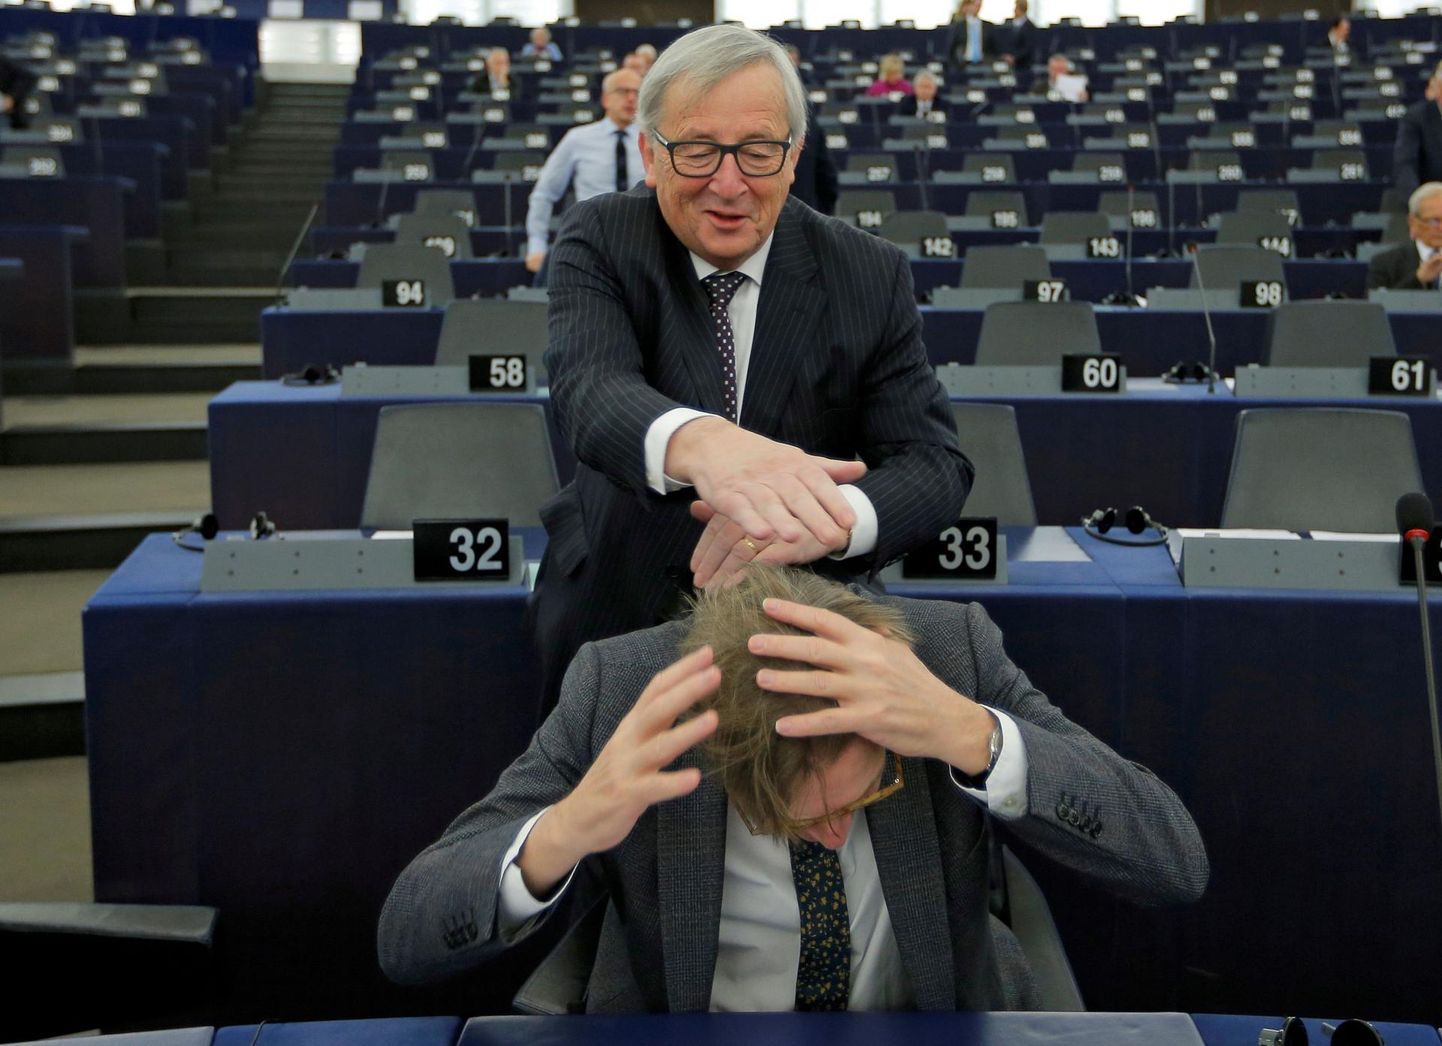 Euroopa Komisjoni president Jean-Claude Juncker sasimas ALDE fraktsiooni juht Guy Verhofstadti pead Euroopa Parlamendi saalis Strasbourgis 6. veebruaril 2018. aastal.